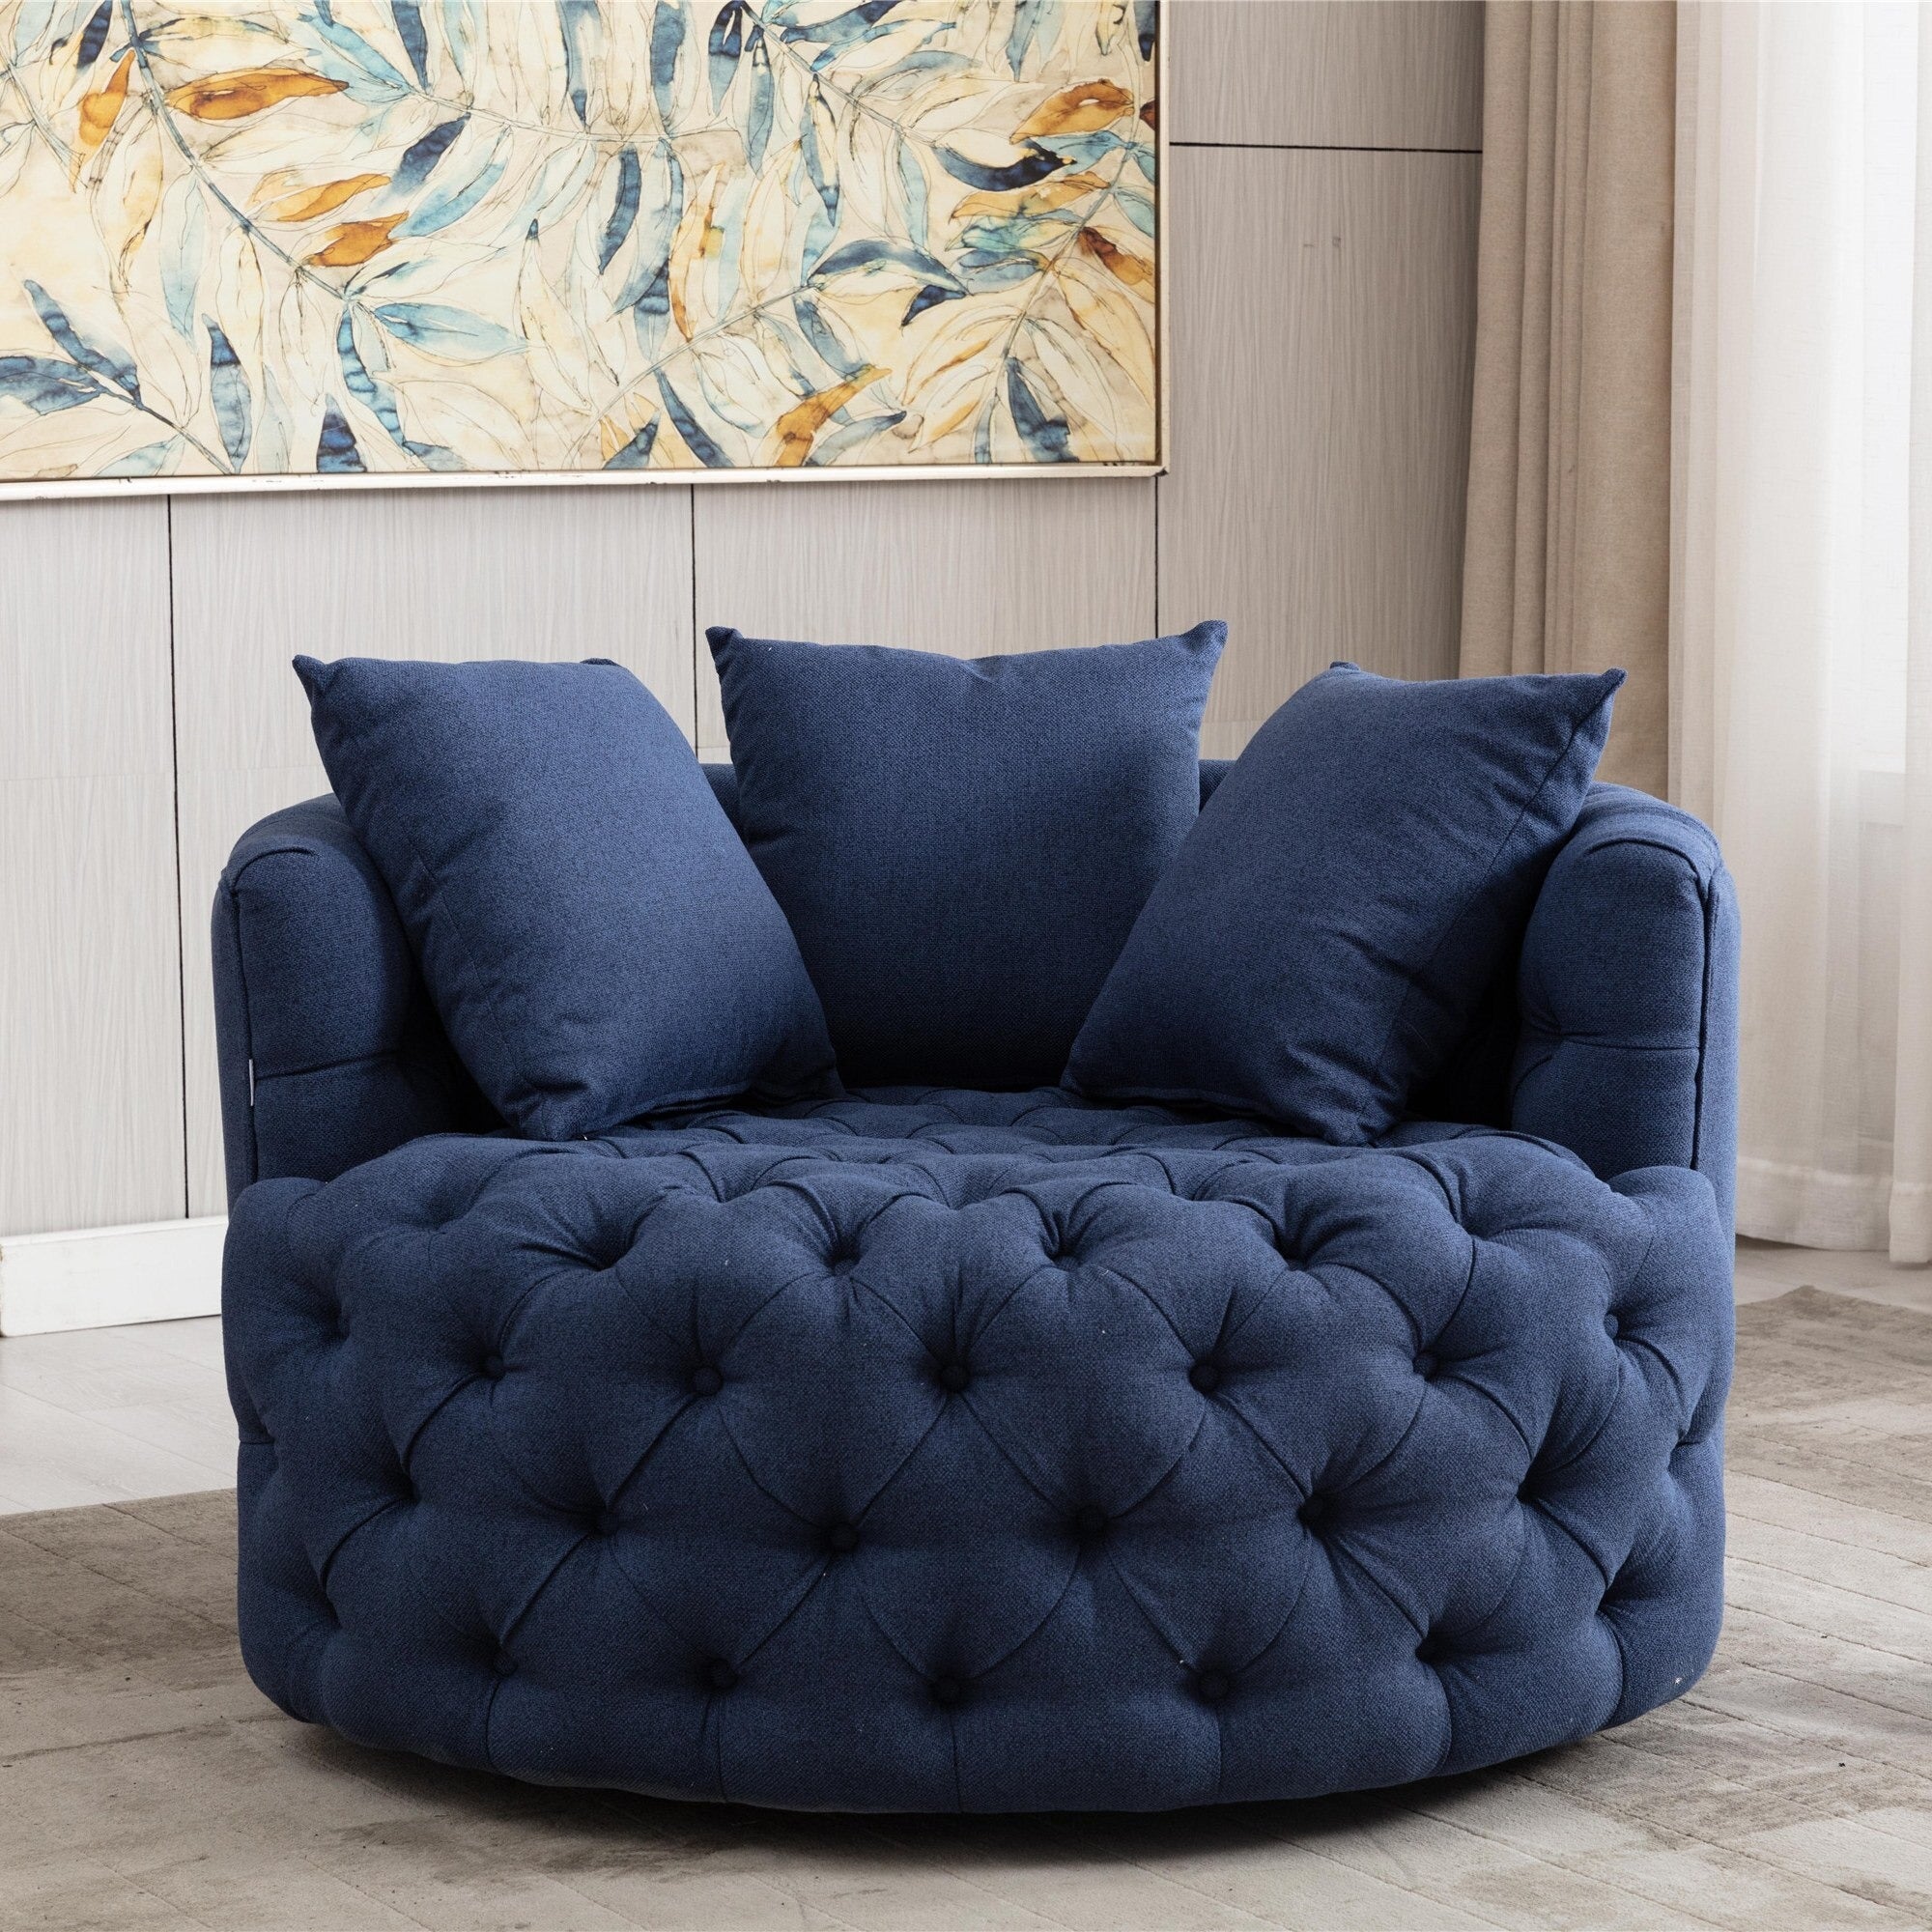 Homio Decor Living Room Linen / Dark Blue Luxury Button Tufted Round Leisure Chair